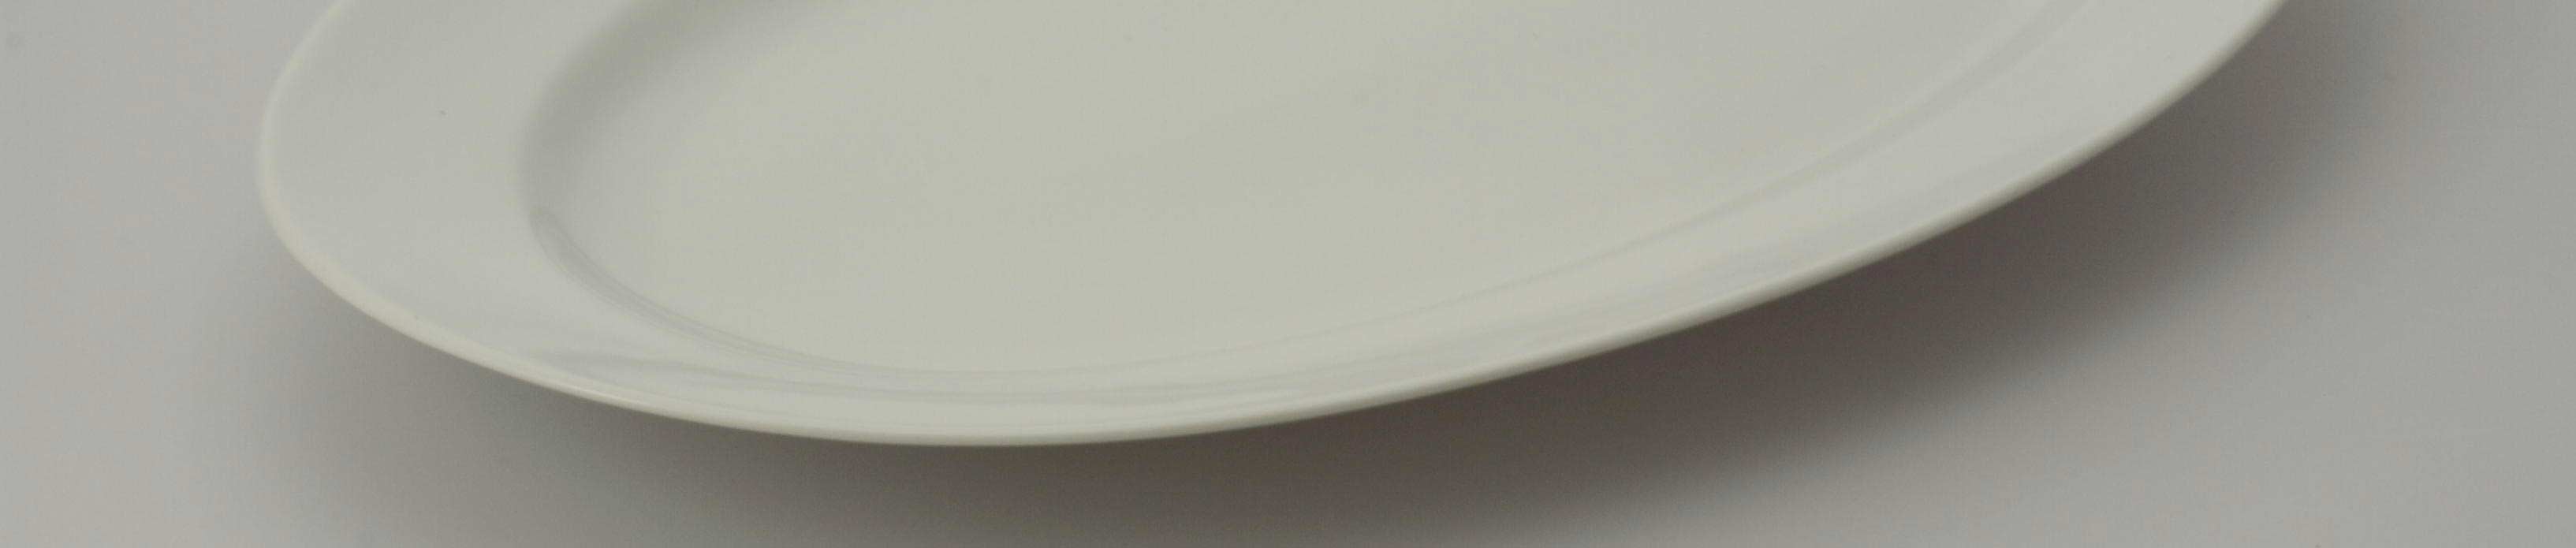 Serviceudlejning af porceln fade - porceln-hvid - Aamand Udlejningscenter